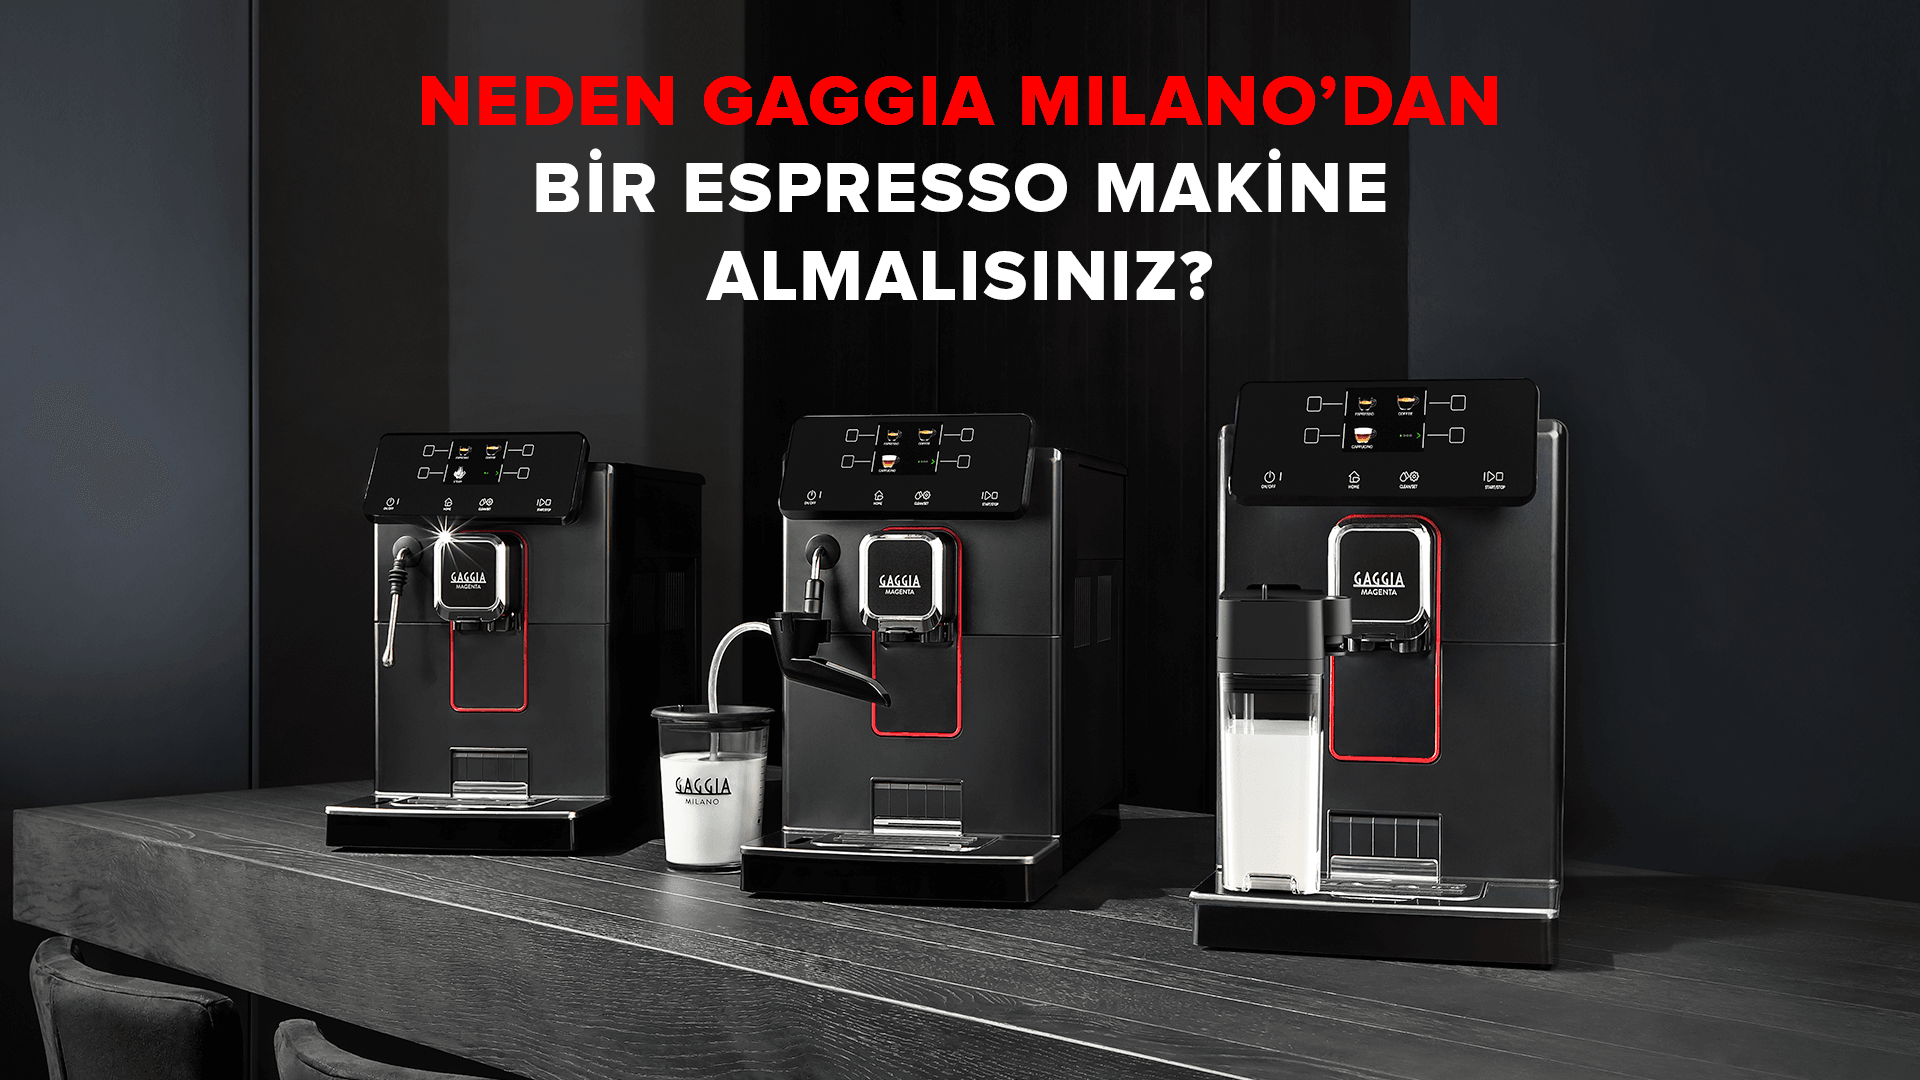 Neden Gaggia Milano’dan Bir Espresso Makine Almalısınız?